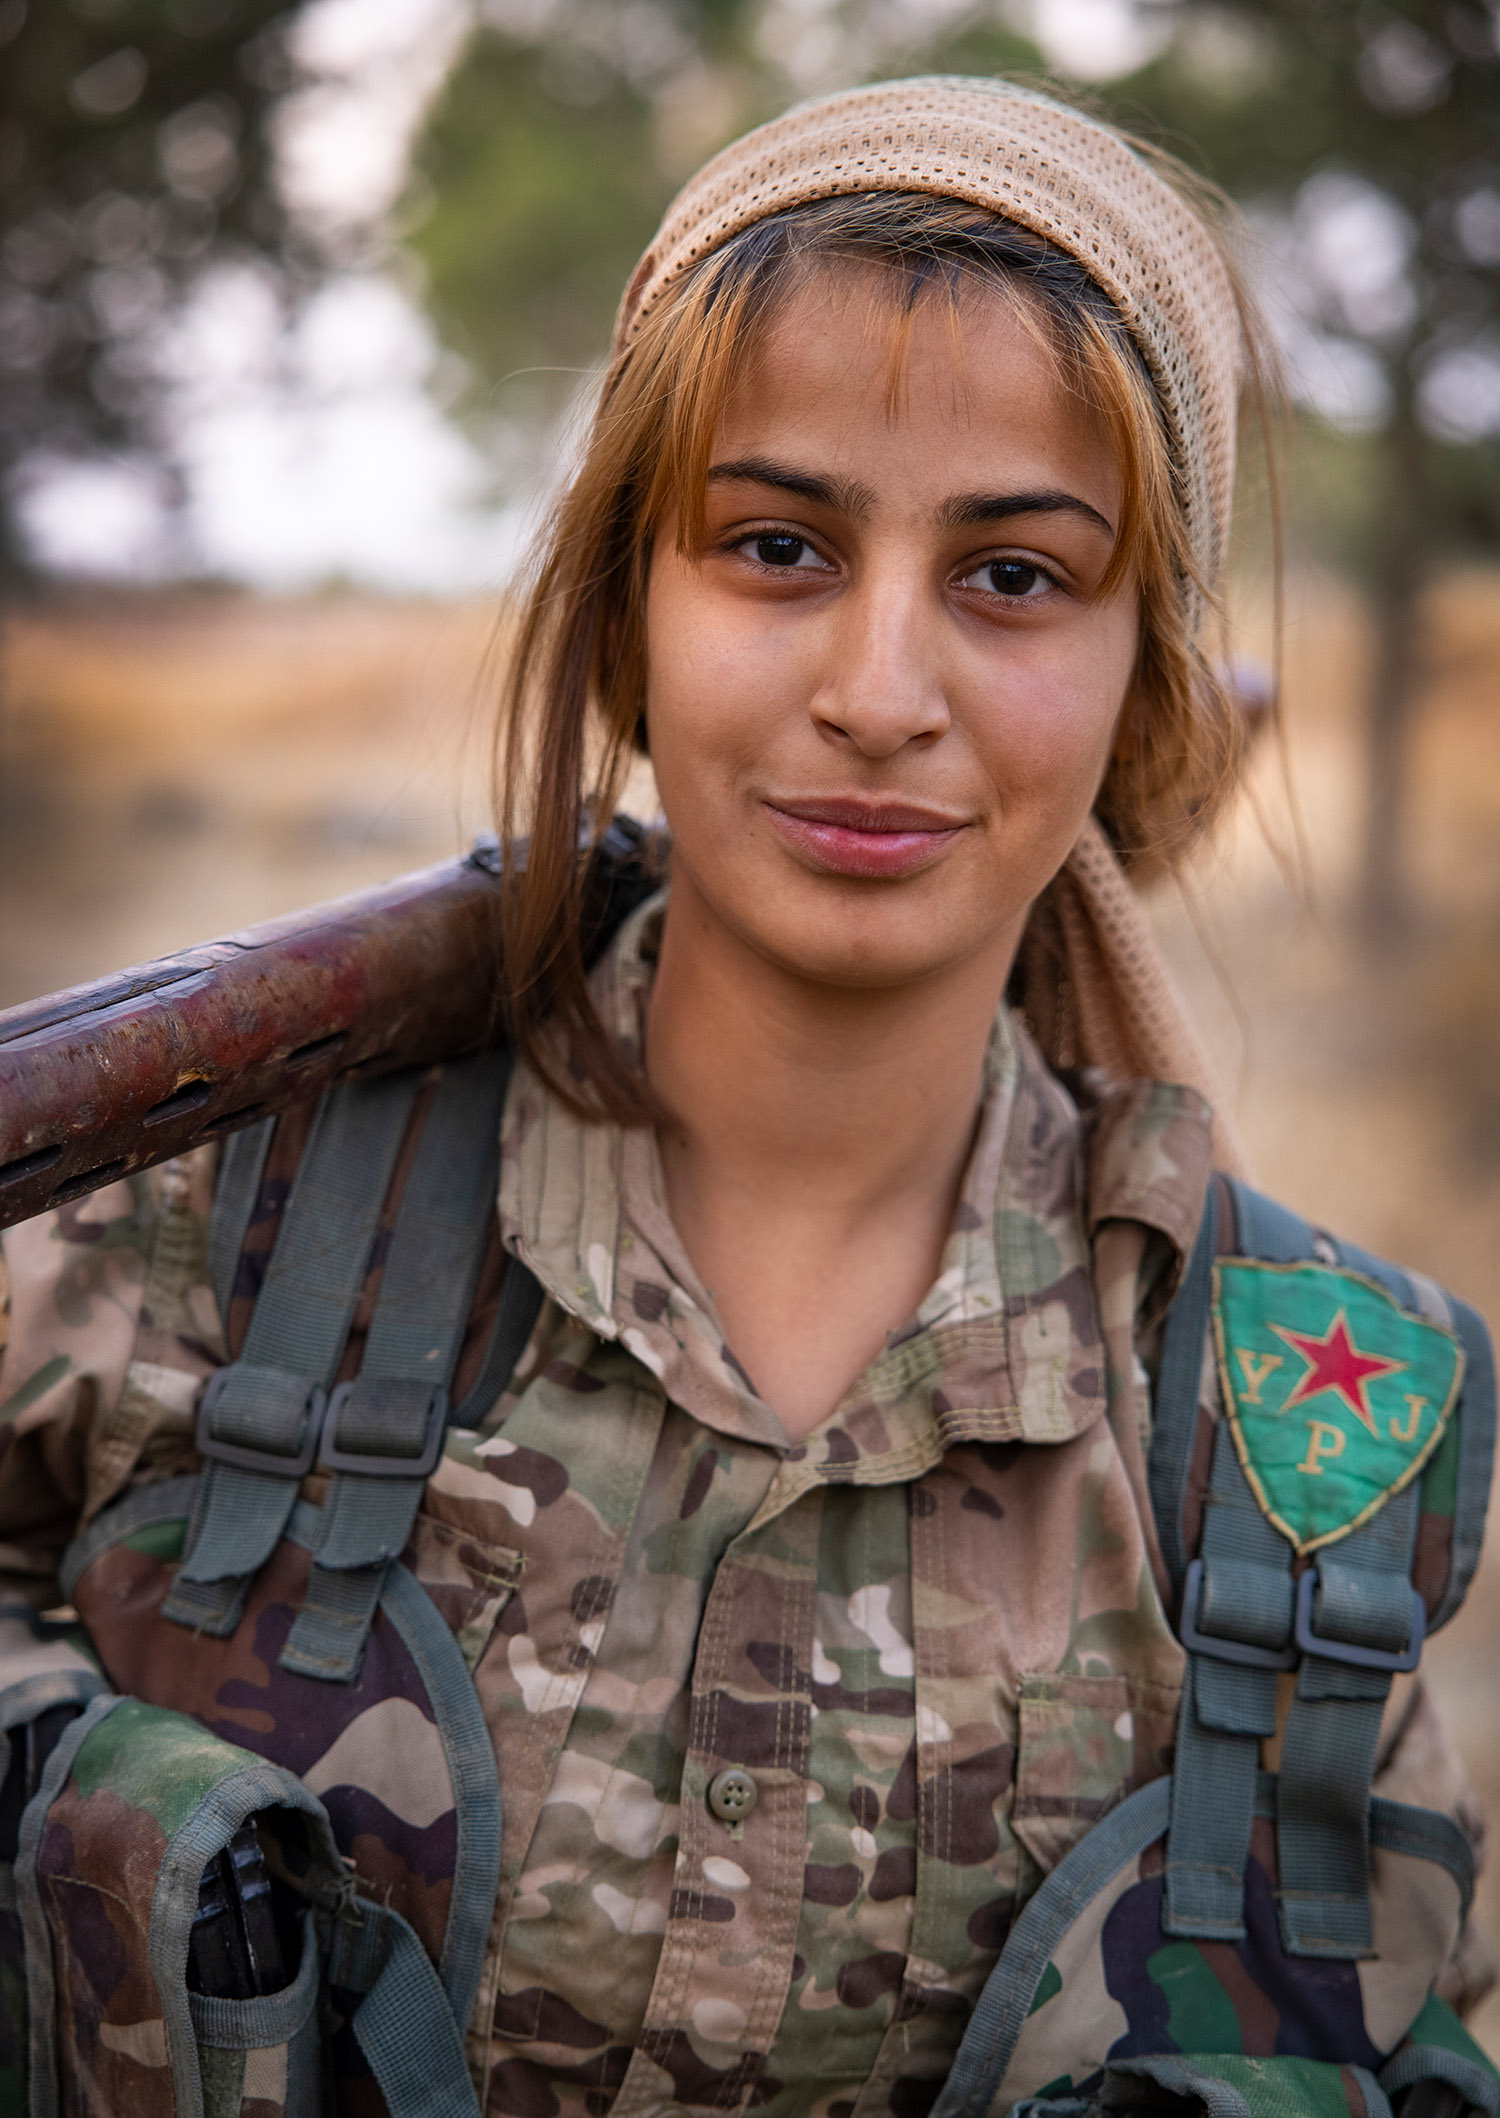 Portrait d'une femme soldat, elle est en uniforme, et porte sur arme sur son épaule.